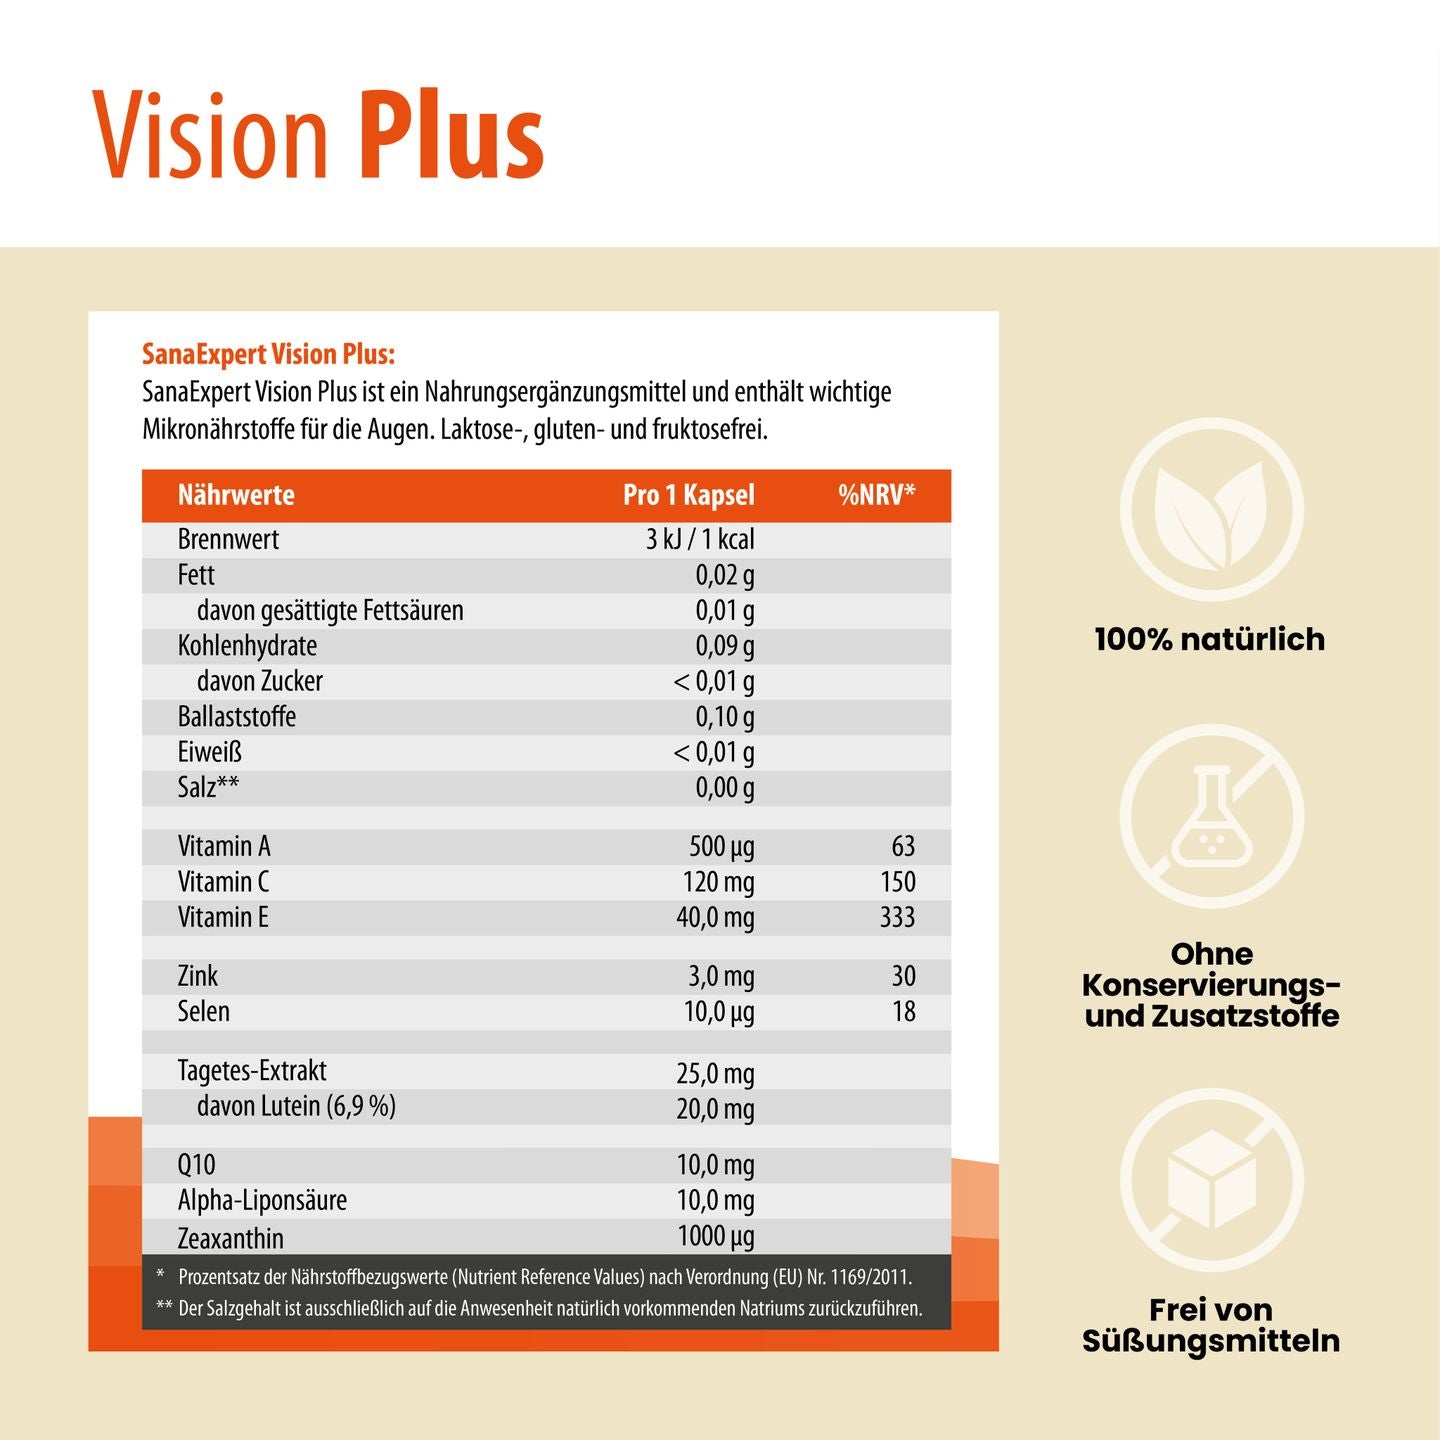 Informationsblatt von SanaExpert Vision Plus mit detaillierter Auflistung der Nährwerte und Inhaltsstoffe pro Kapsel, betont die Natürlichkeit und Freiheit von Zusatzstoffen.